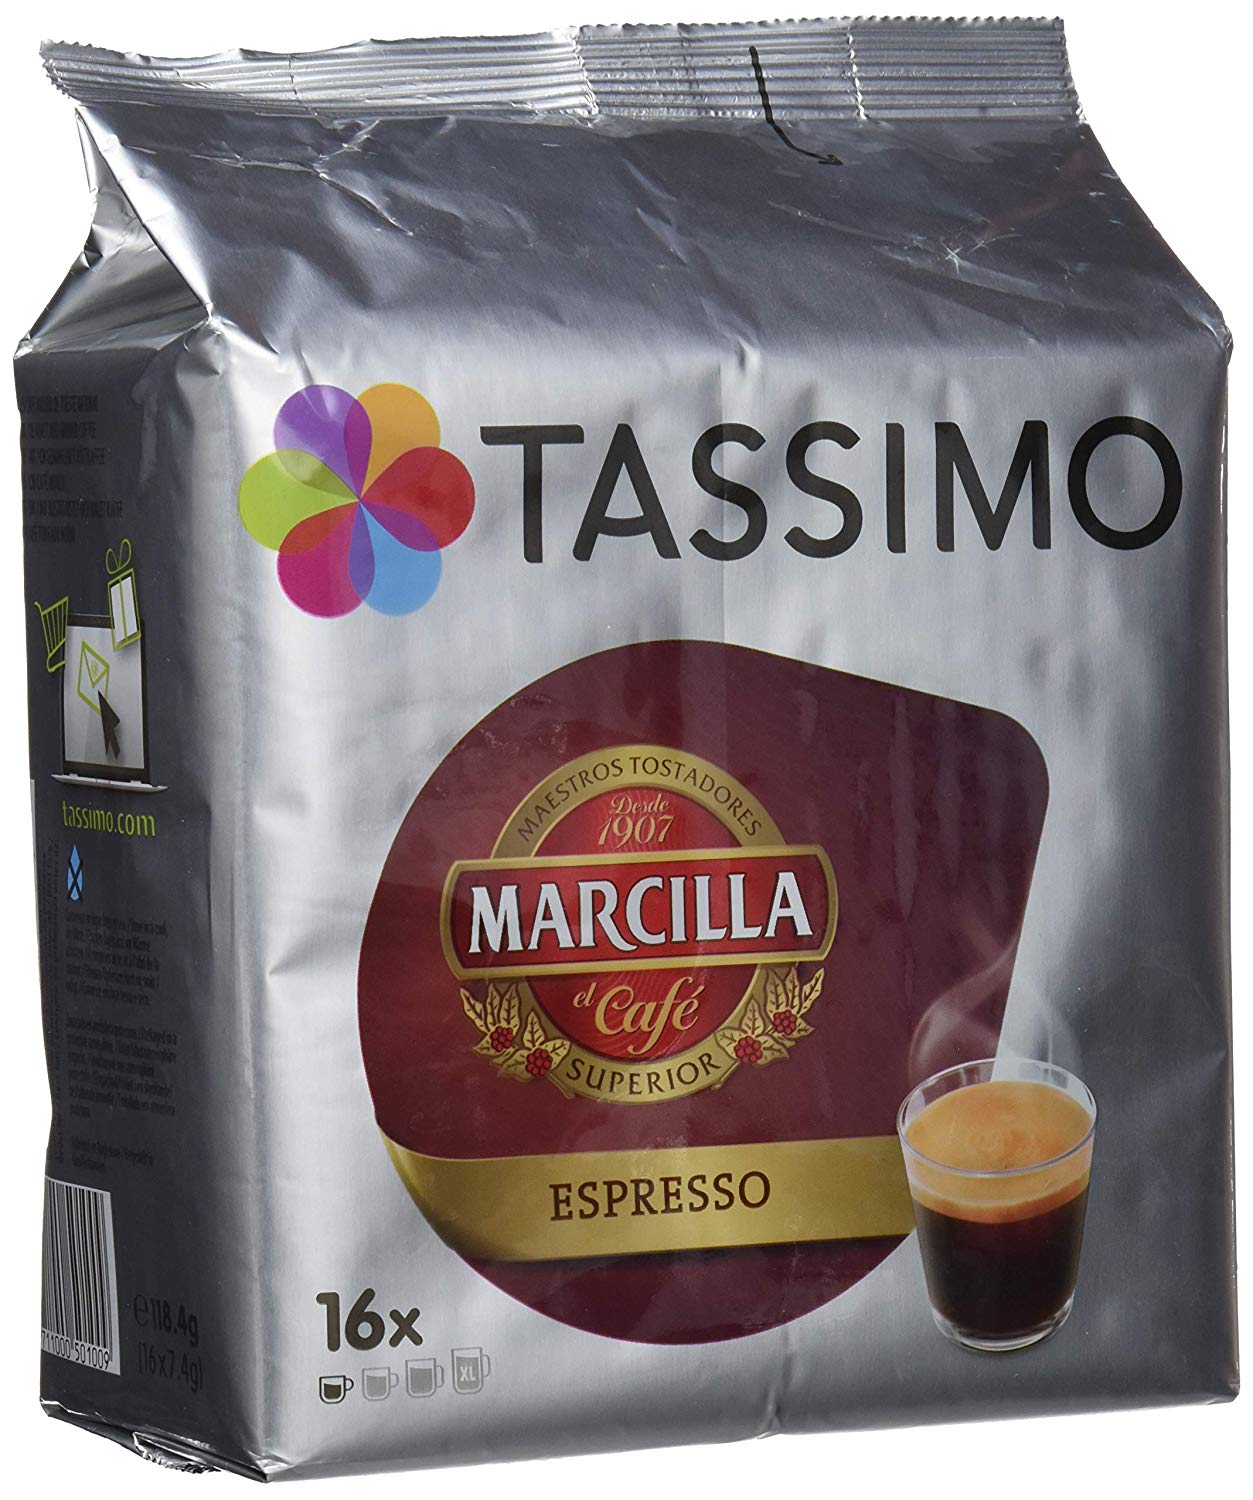 Pack de 80 cápsulas de café (Espresso)solo 4,3€